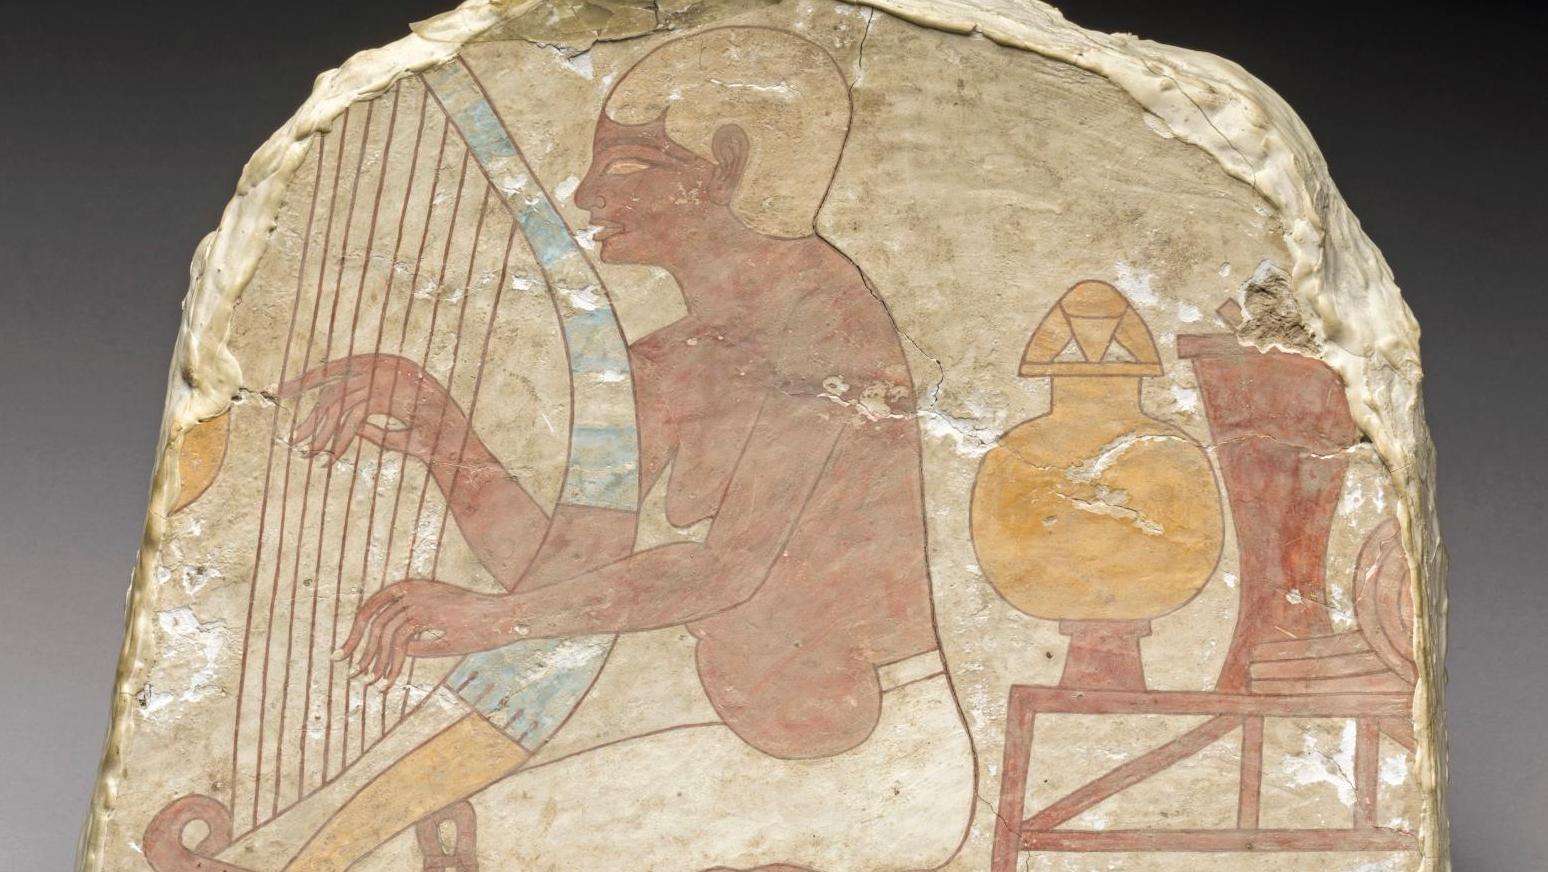 Égypte, Nouvel Empire, XVIIIe dynastie (1550-1292 av. J.-C.). Fragment de peinture... De l’écriture à la musique, plaisirs d’esthètes